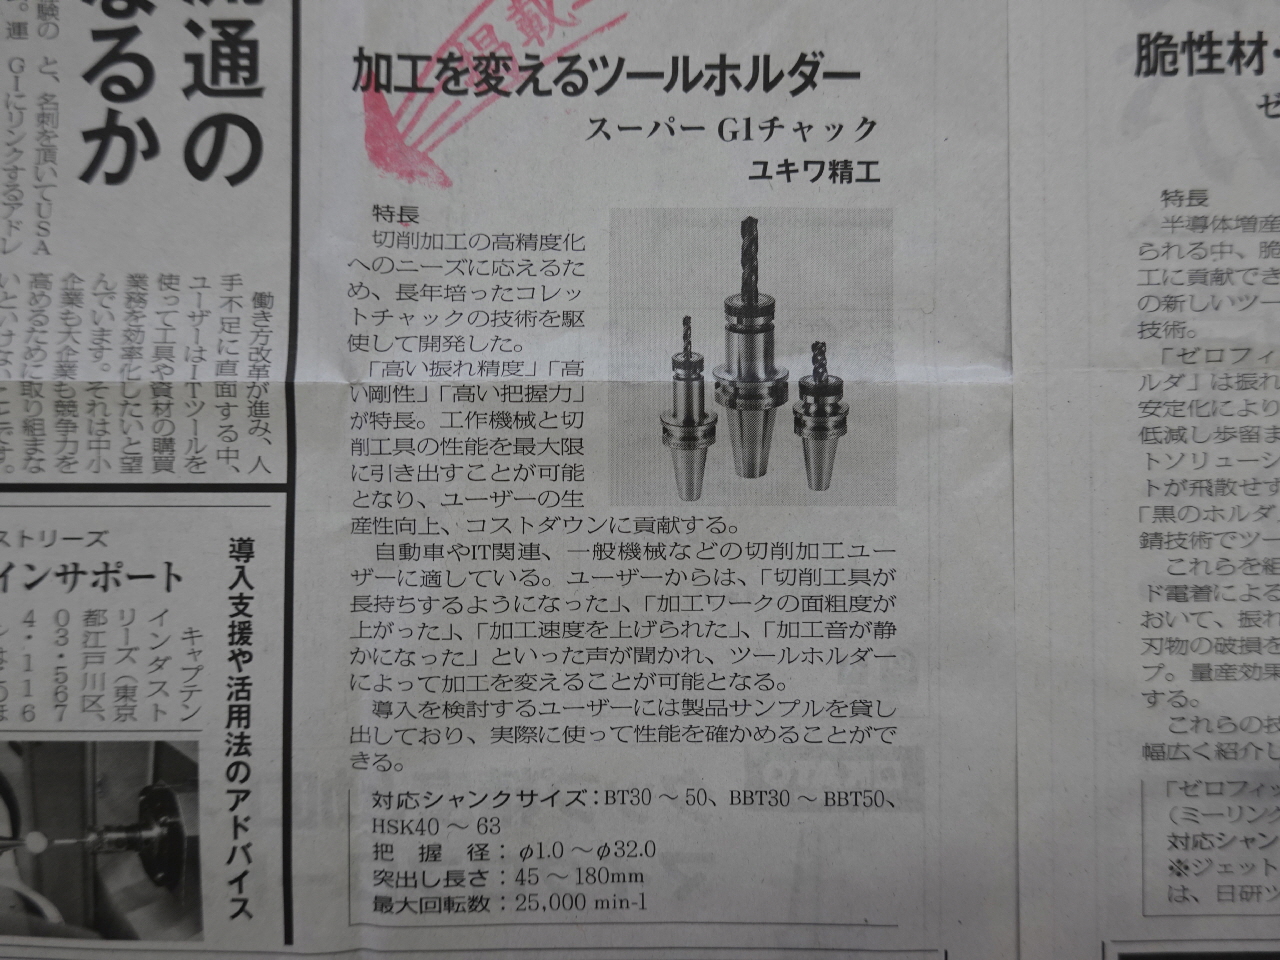 日本産機新聞Innovation 特集にスーパーG1 チャックが掲載されました。